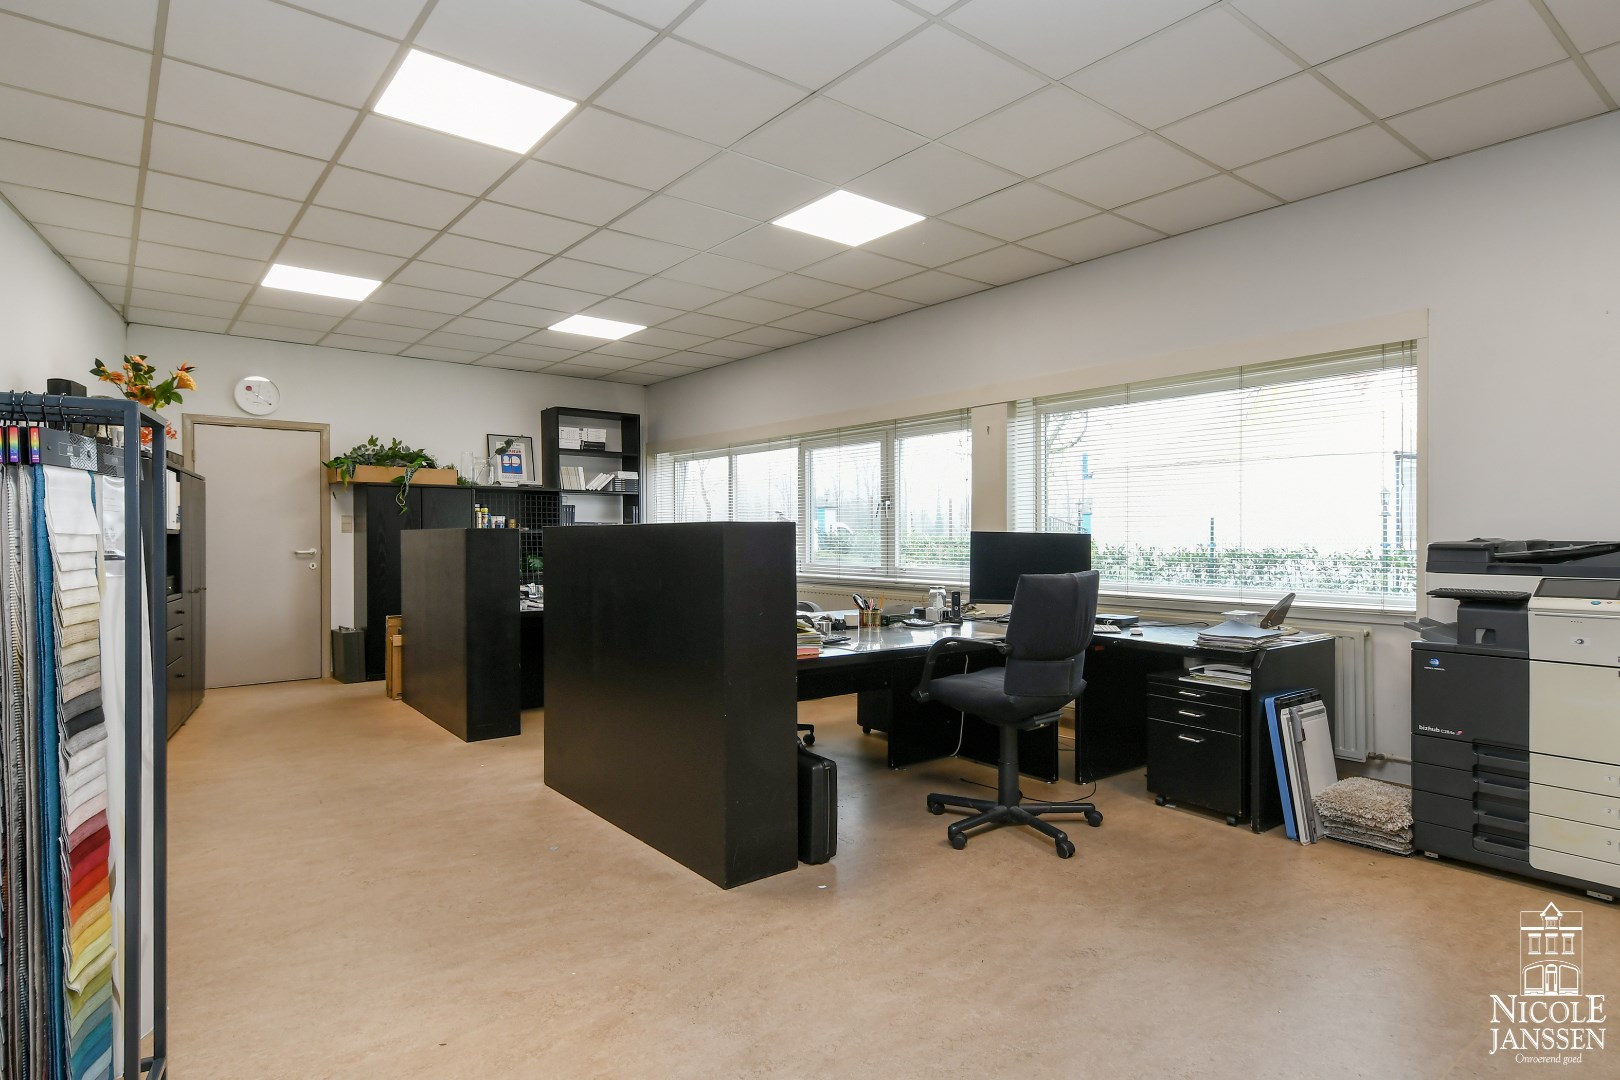 Aparte kantoorruimtes met linoleumvloer